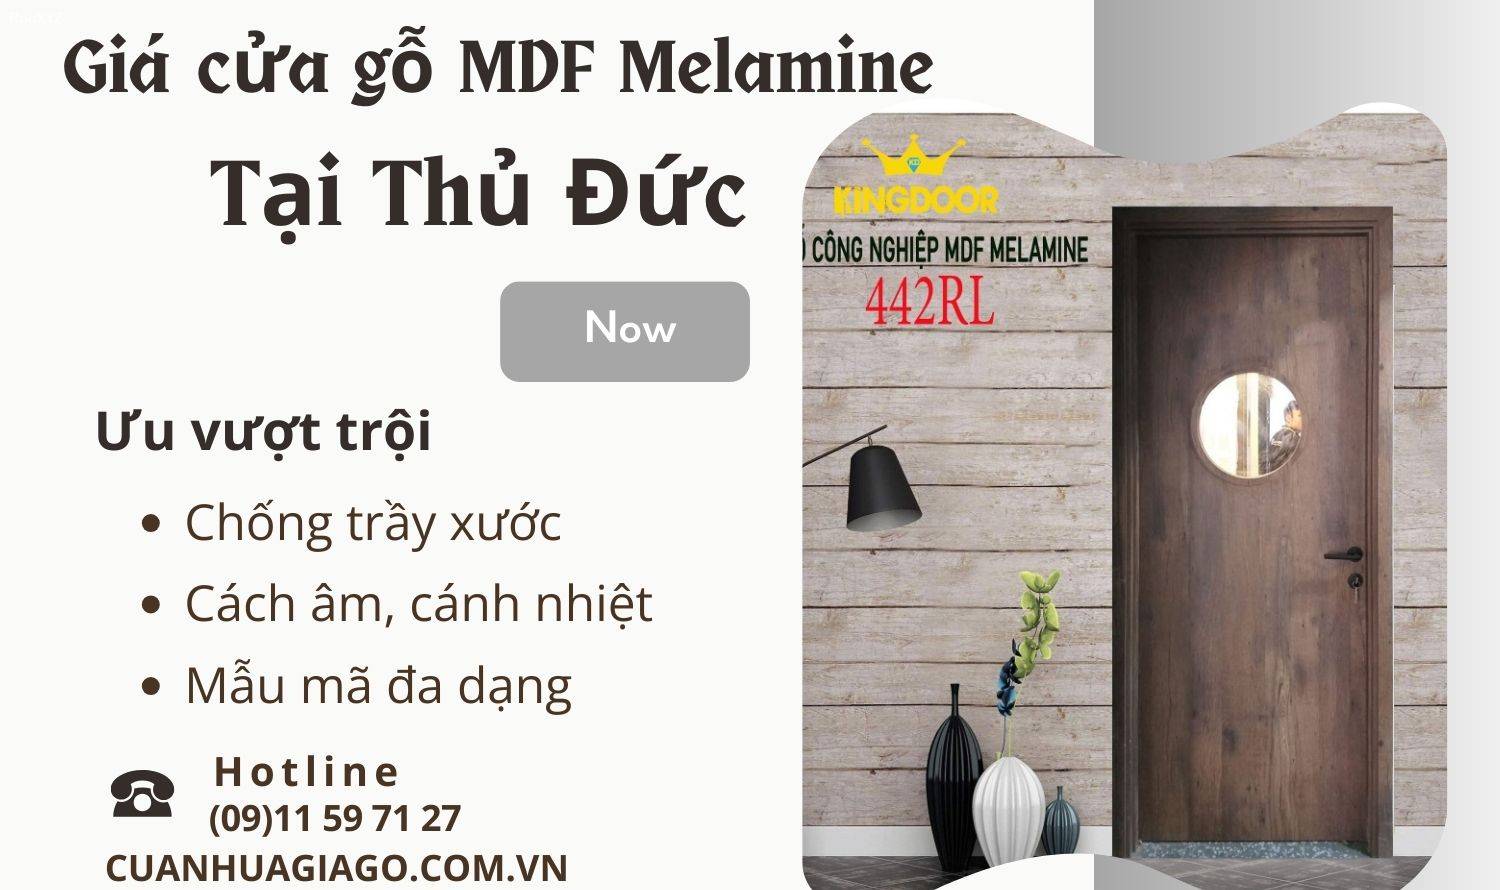 Giá cửa gỗ MDF Melamine tại Thủ Đức